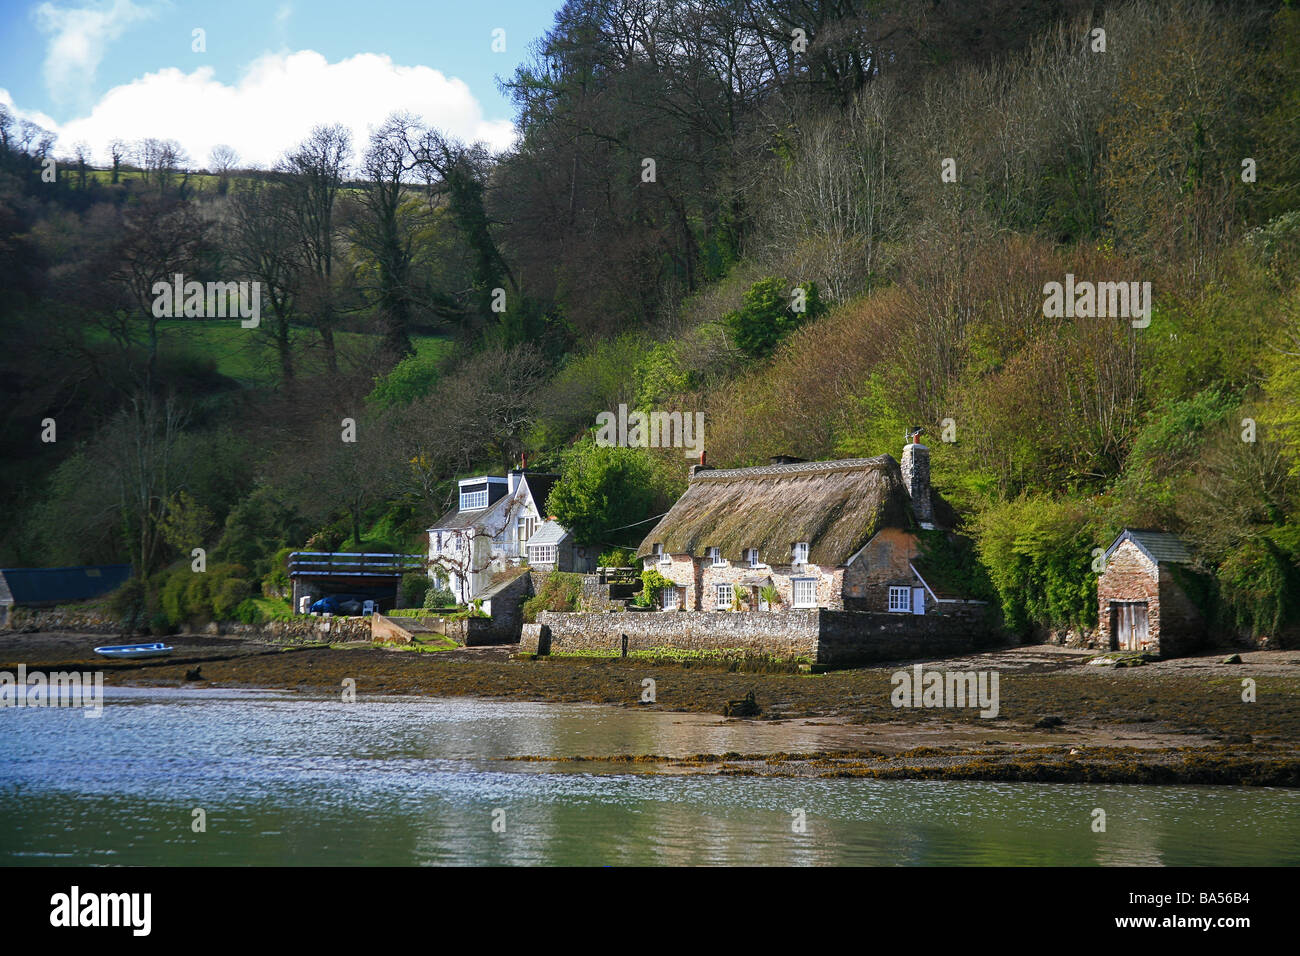 Riverside cottage à Dittisham sur la rivière Dart, Devon, England, UK Banque D'Images